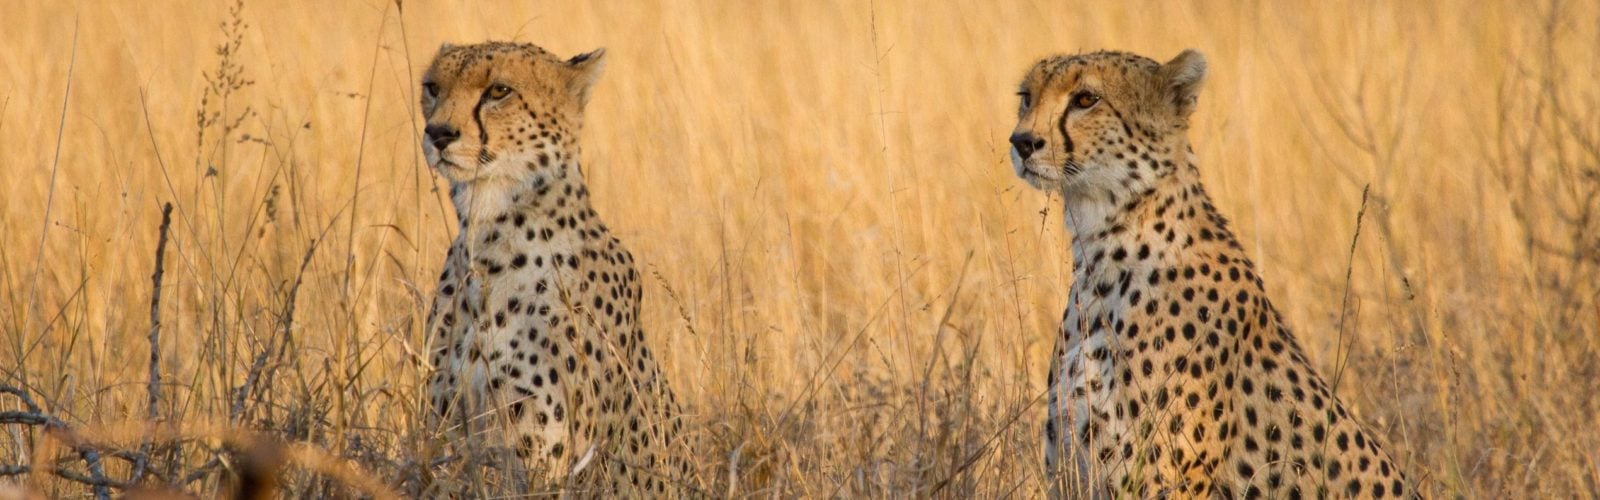 Kenya Safari Tour Cheetahs